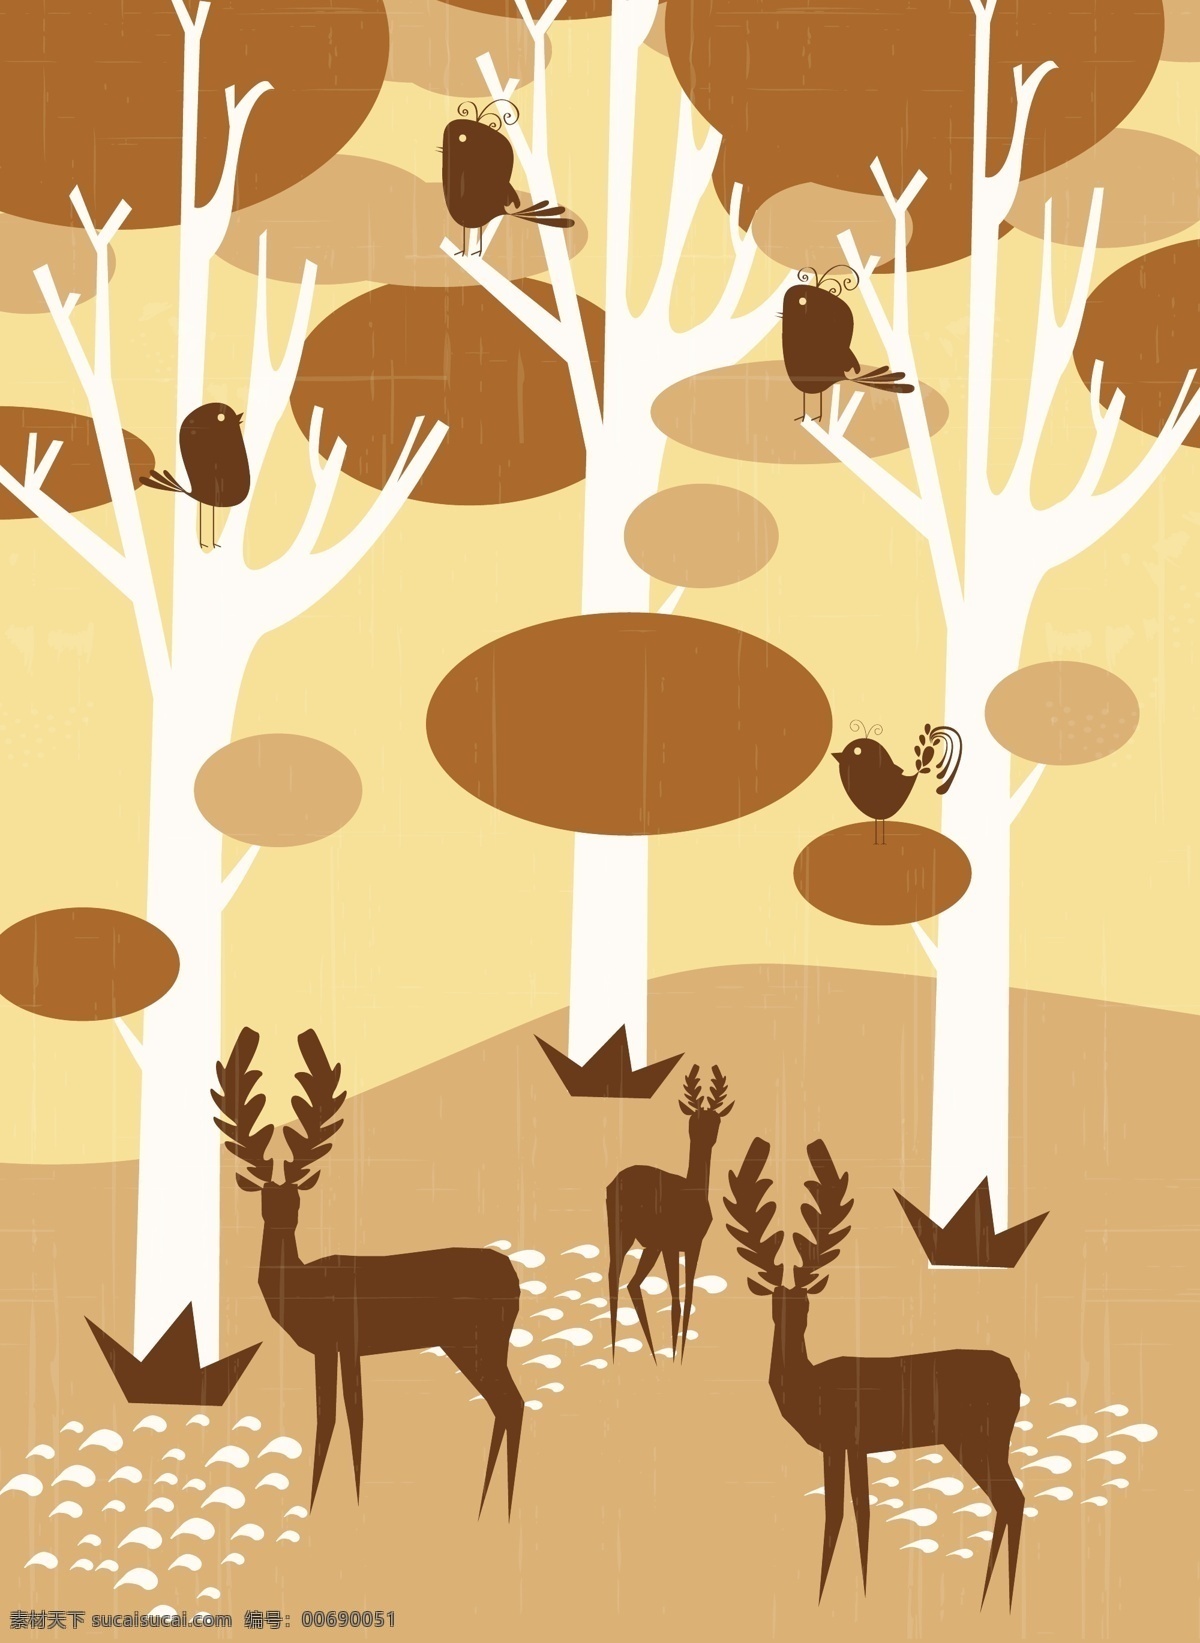 森林 动物 大树 背景 图 广告背景 广告 背景素材 鸟类 梅花鹿 脚印 棕色 圆形 创意 漂亮 背景底纹